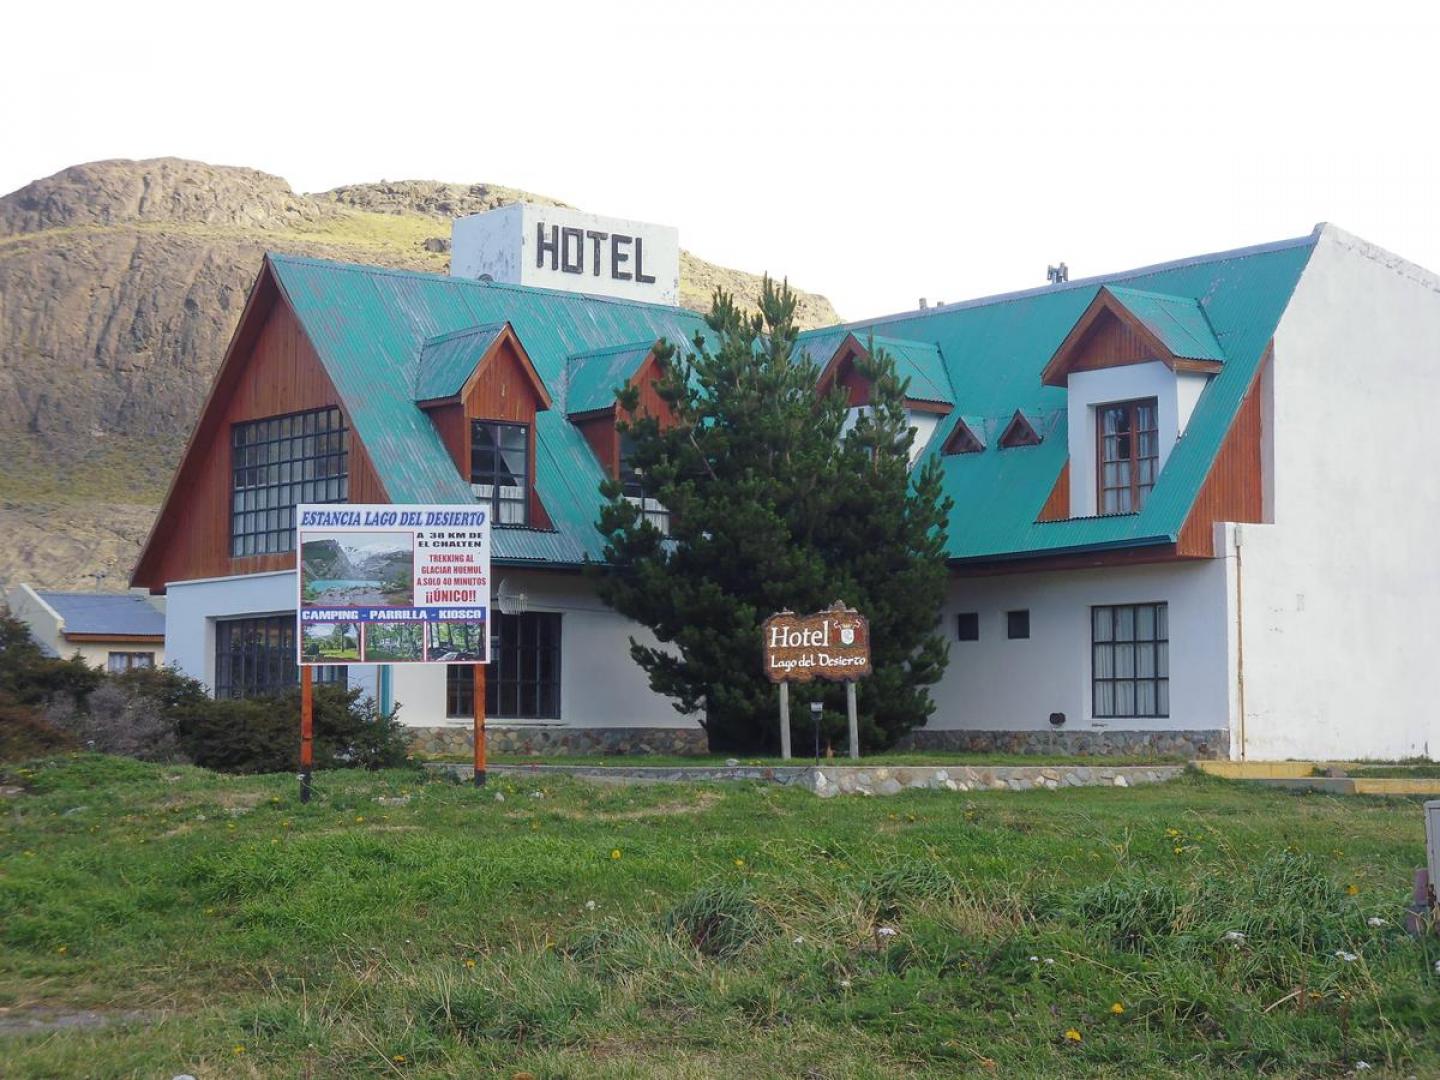 Hotel Lago del Desierto El Chalten